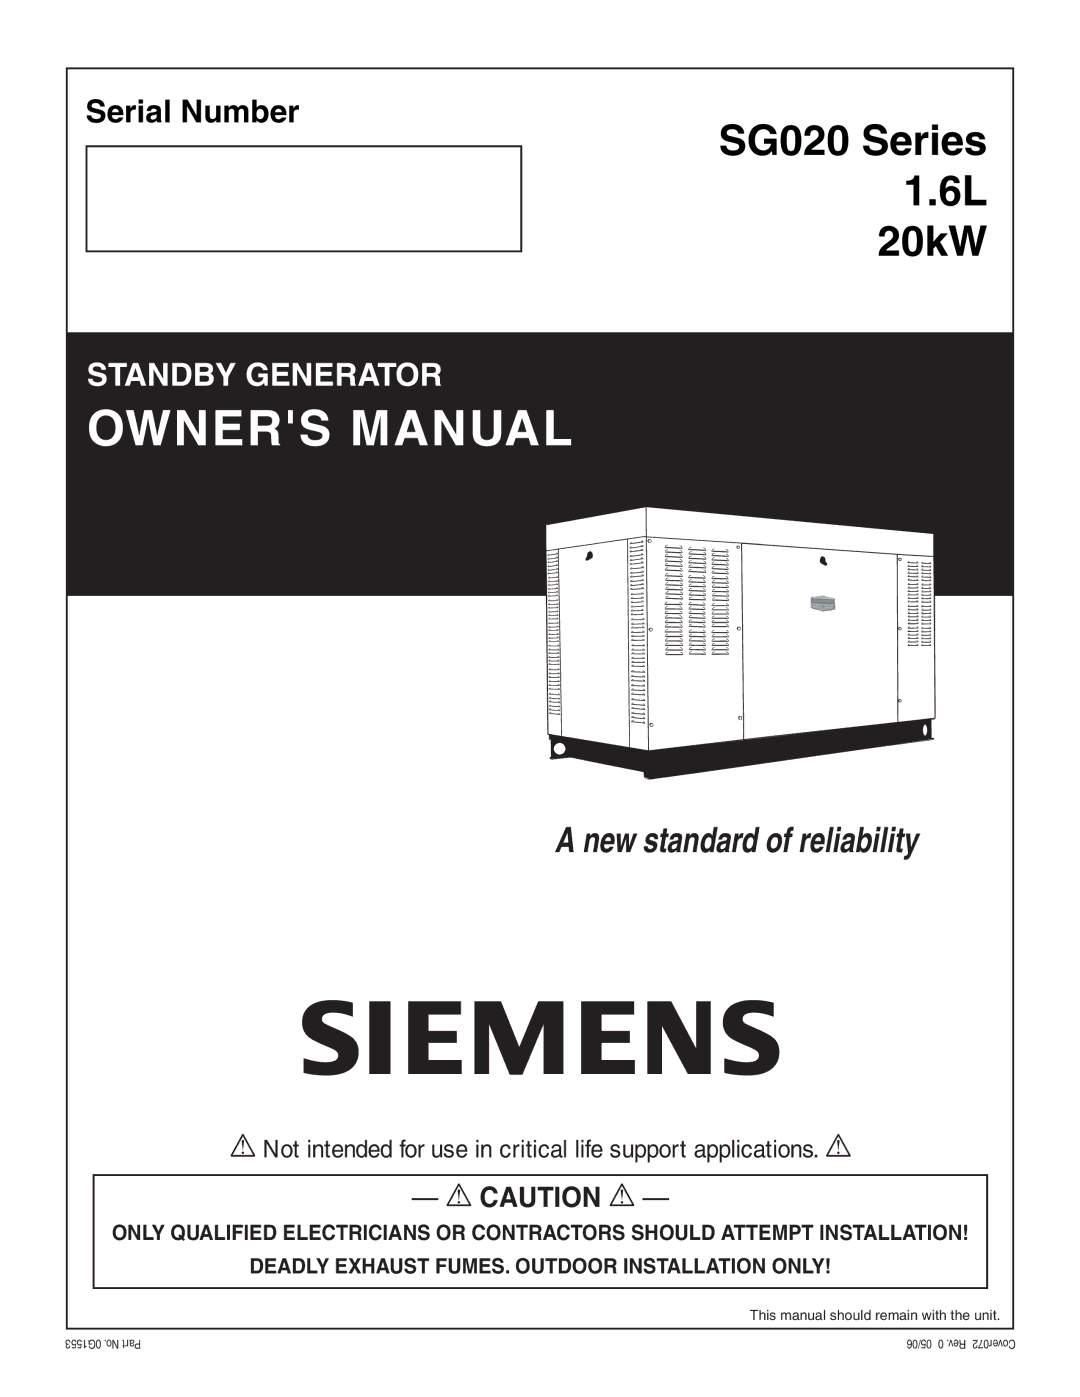 Siemens owner manual SG020 Series 1.6L 20kW 